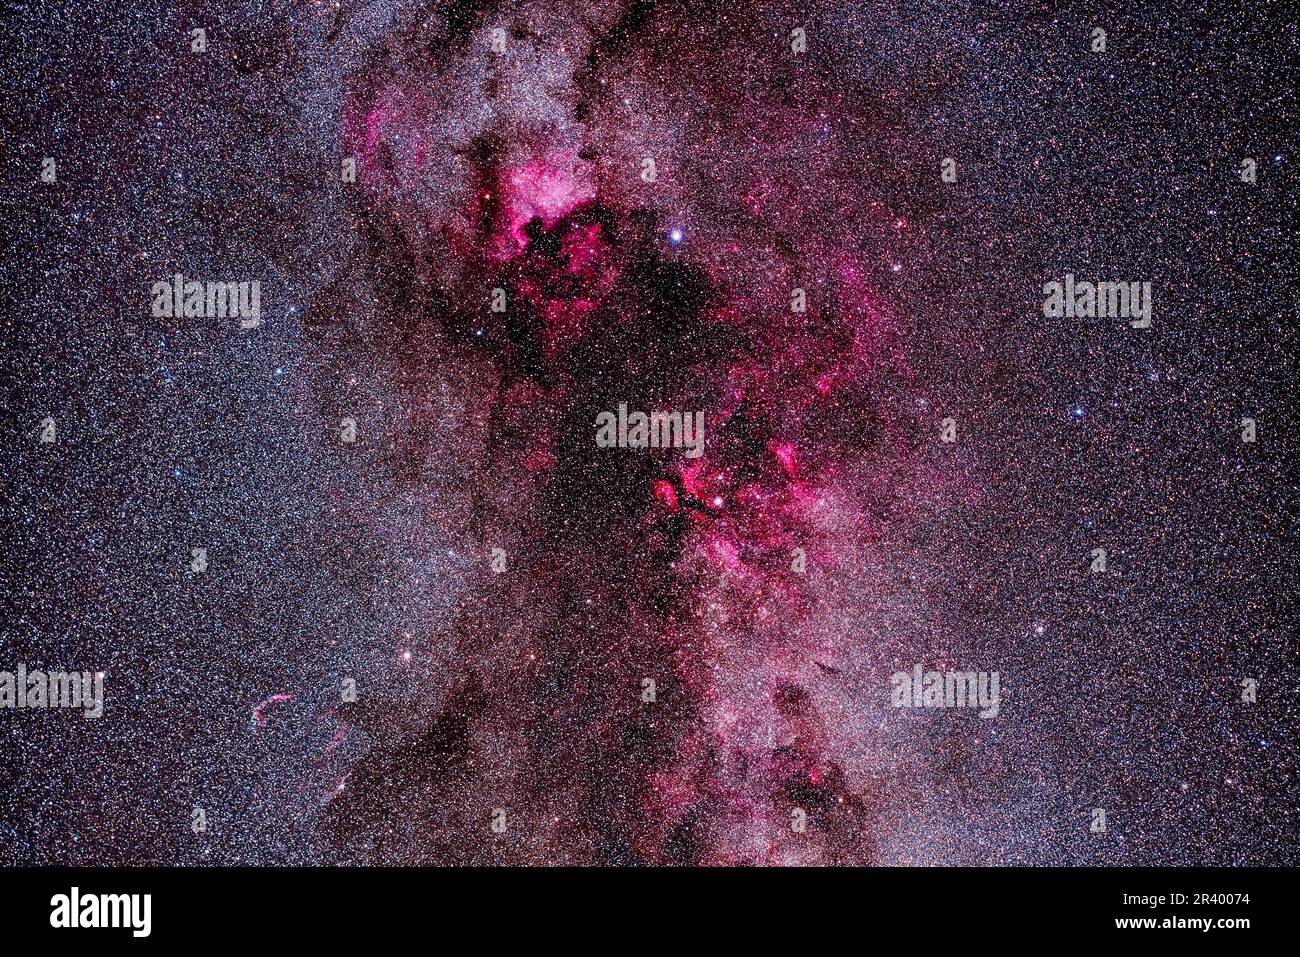 Der Komplex aus roten Emission und dunkel staubigen Nebel in Cygnus Nebel, aufgenommen um 70mm. Stockfoto